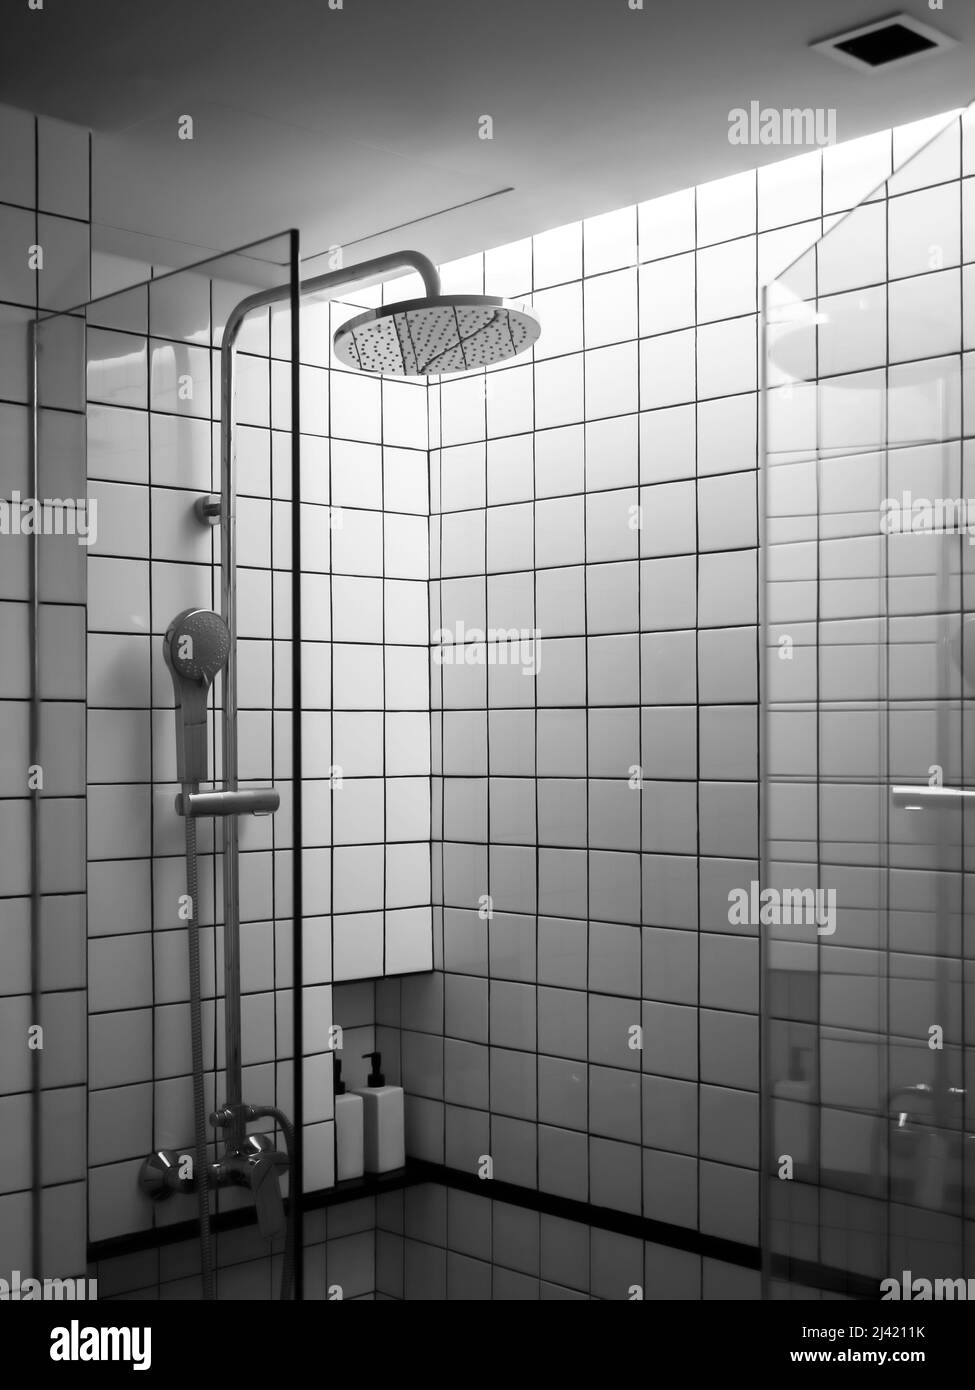 Schwarz-weiße Kacheln Wand, das Innere der modernen Dusche Raum-Box im Bad mit Overhead-Regendusche in Glastür Trennwand, vertikale s Stockfoto